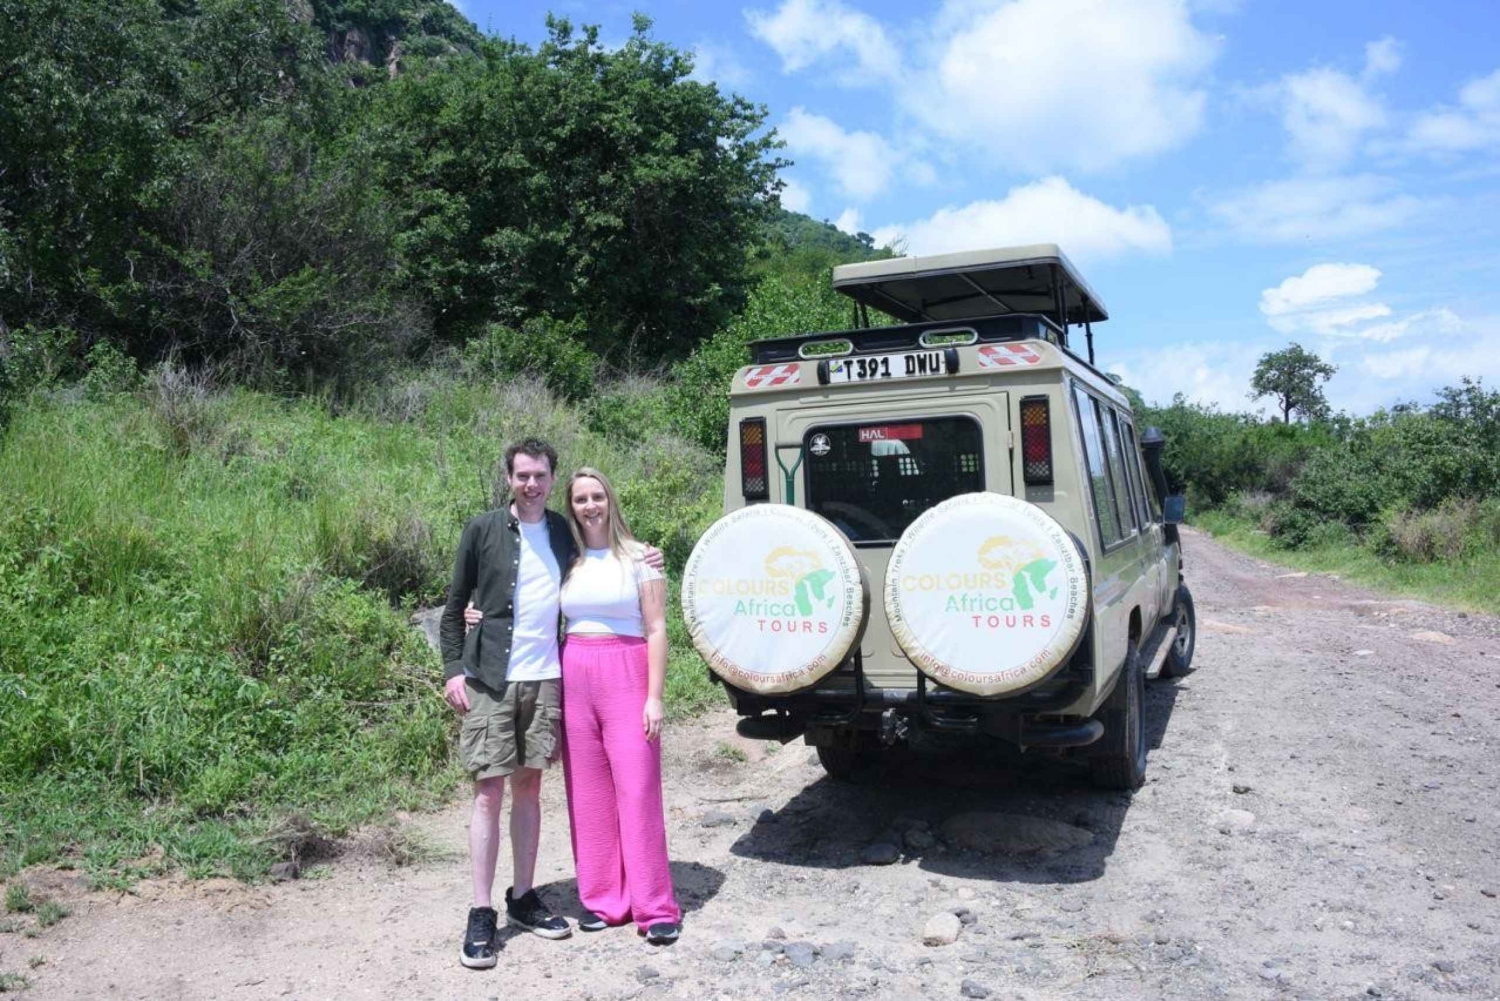 3-Tanzania safari to Serengeti and Ngorongoro